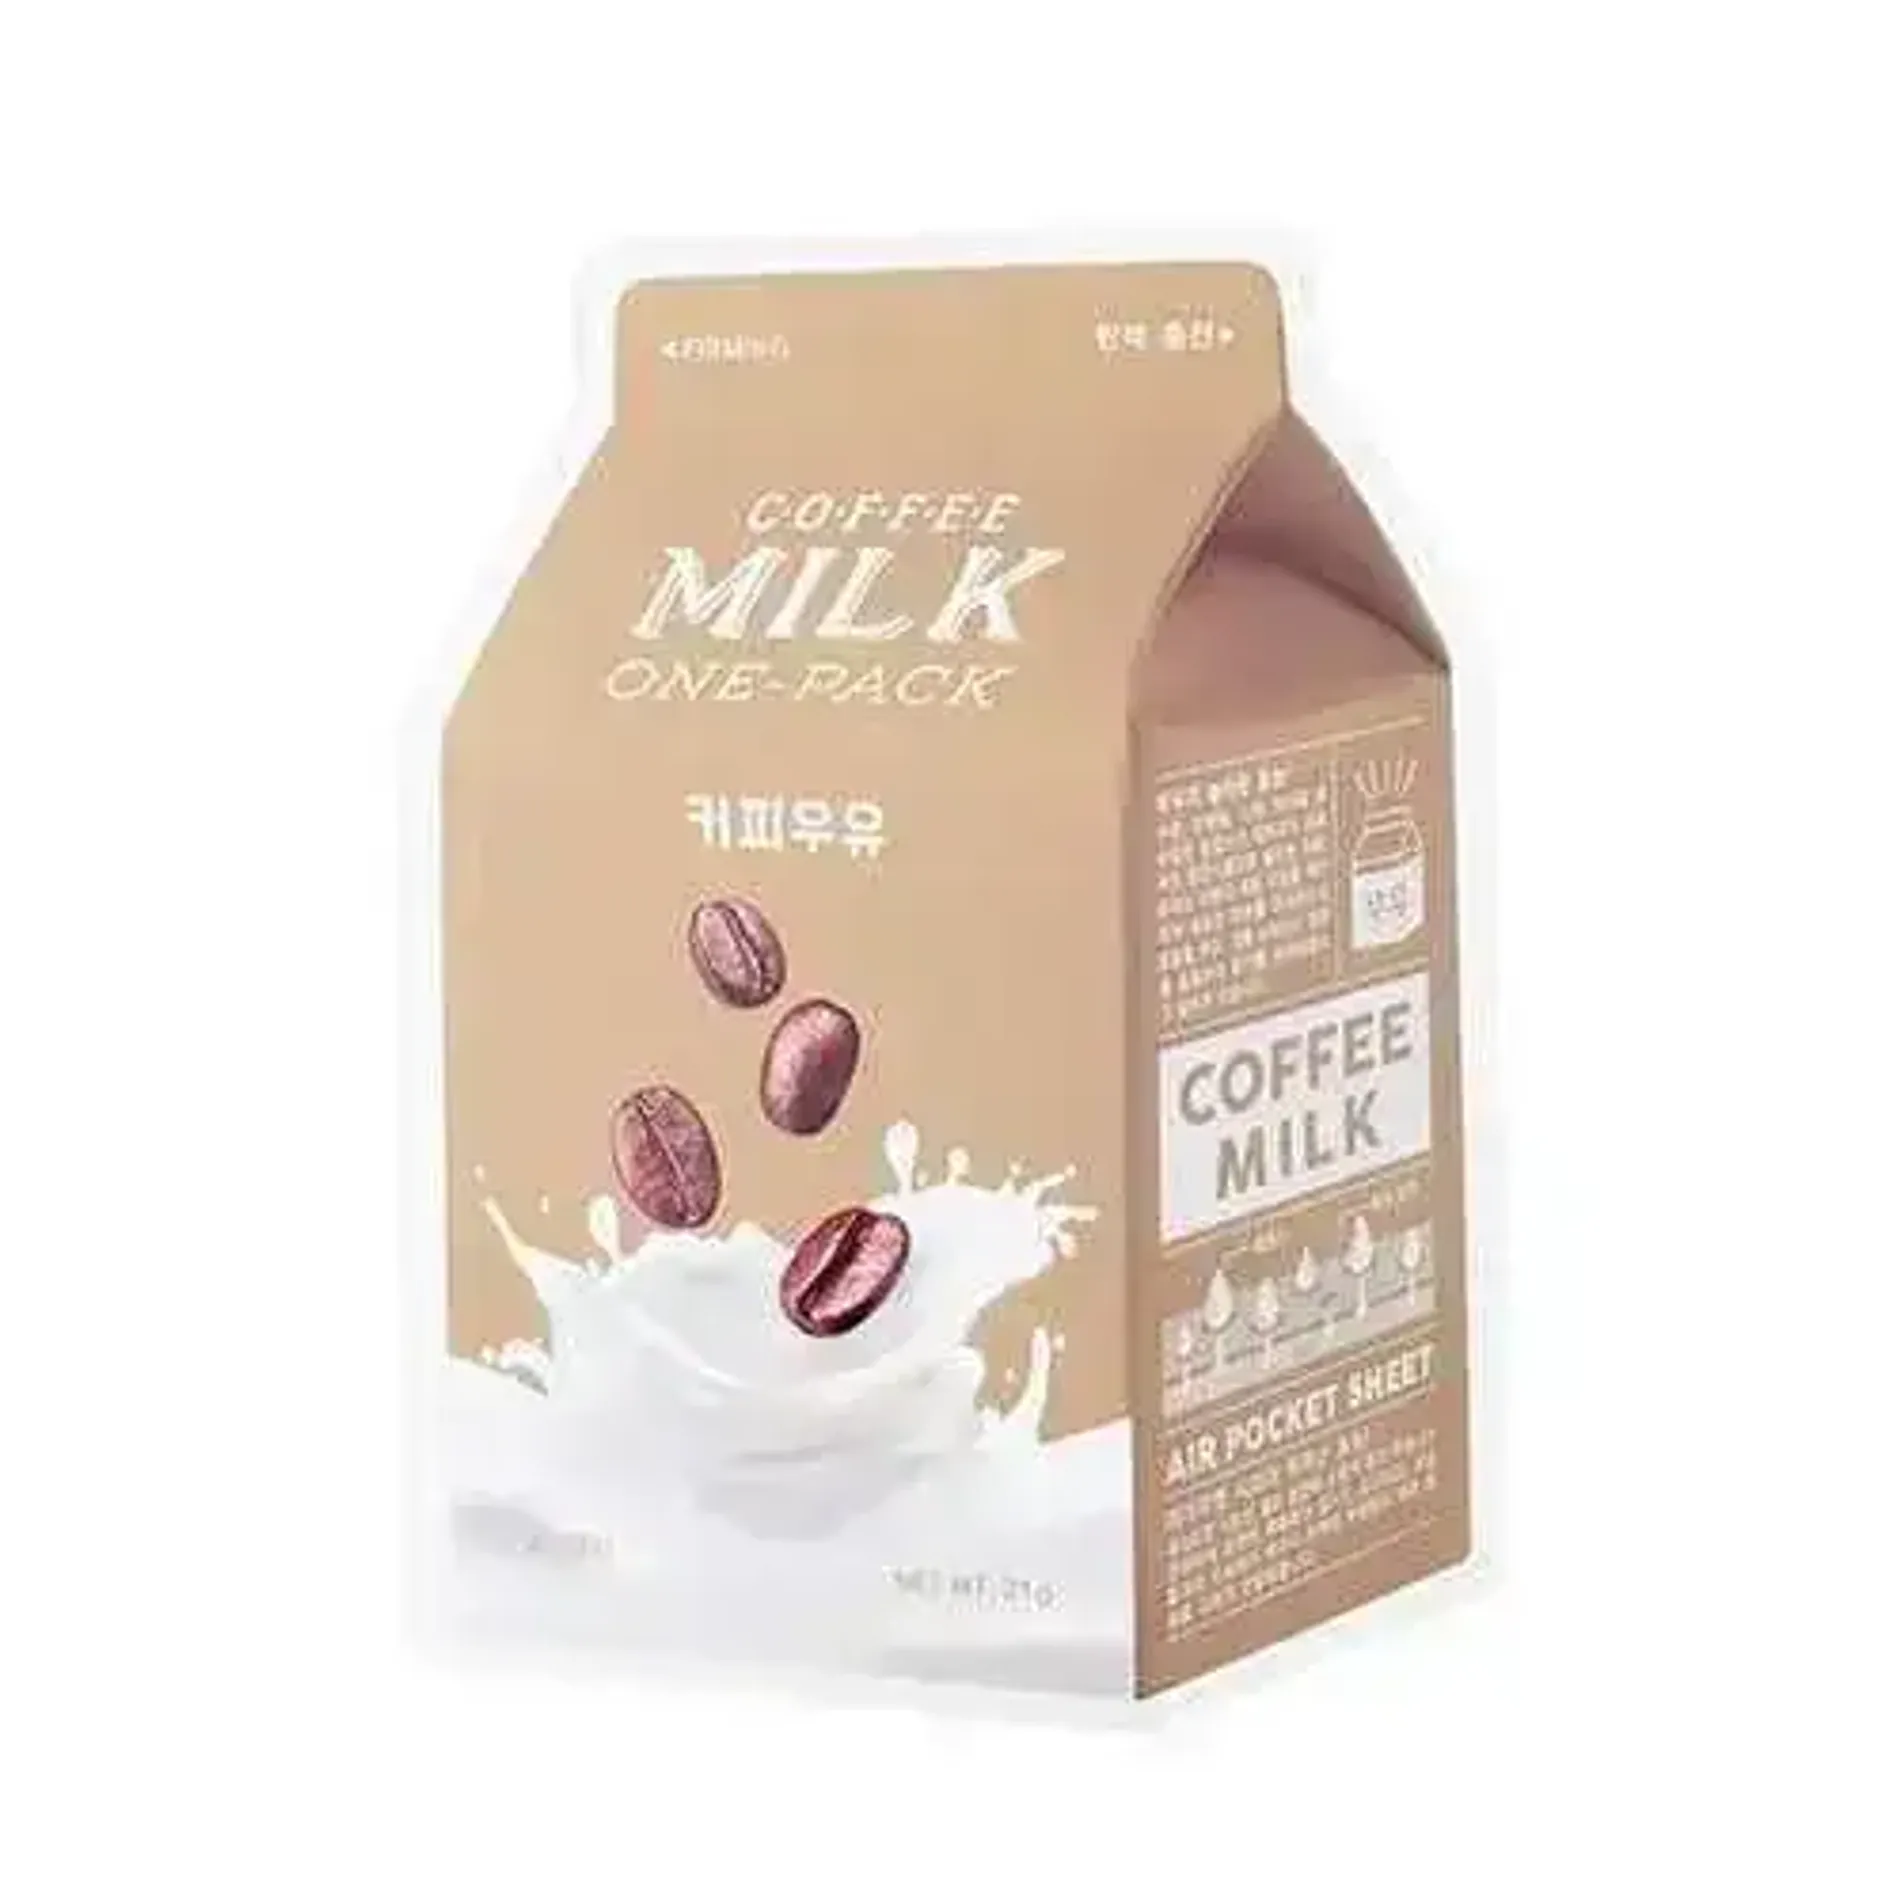 mat-na-giay-chong-lao-hoa-da-a-pieu-coffee-milk-one-pack-1